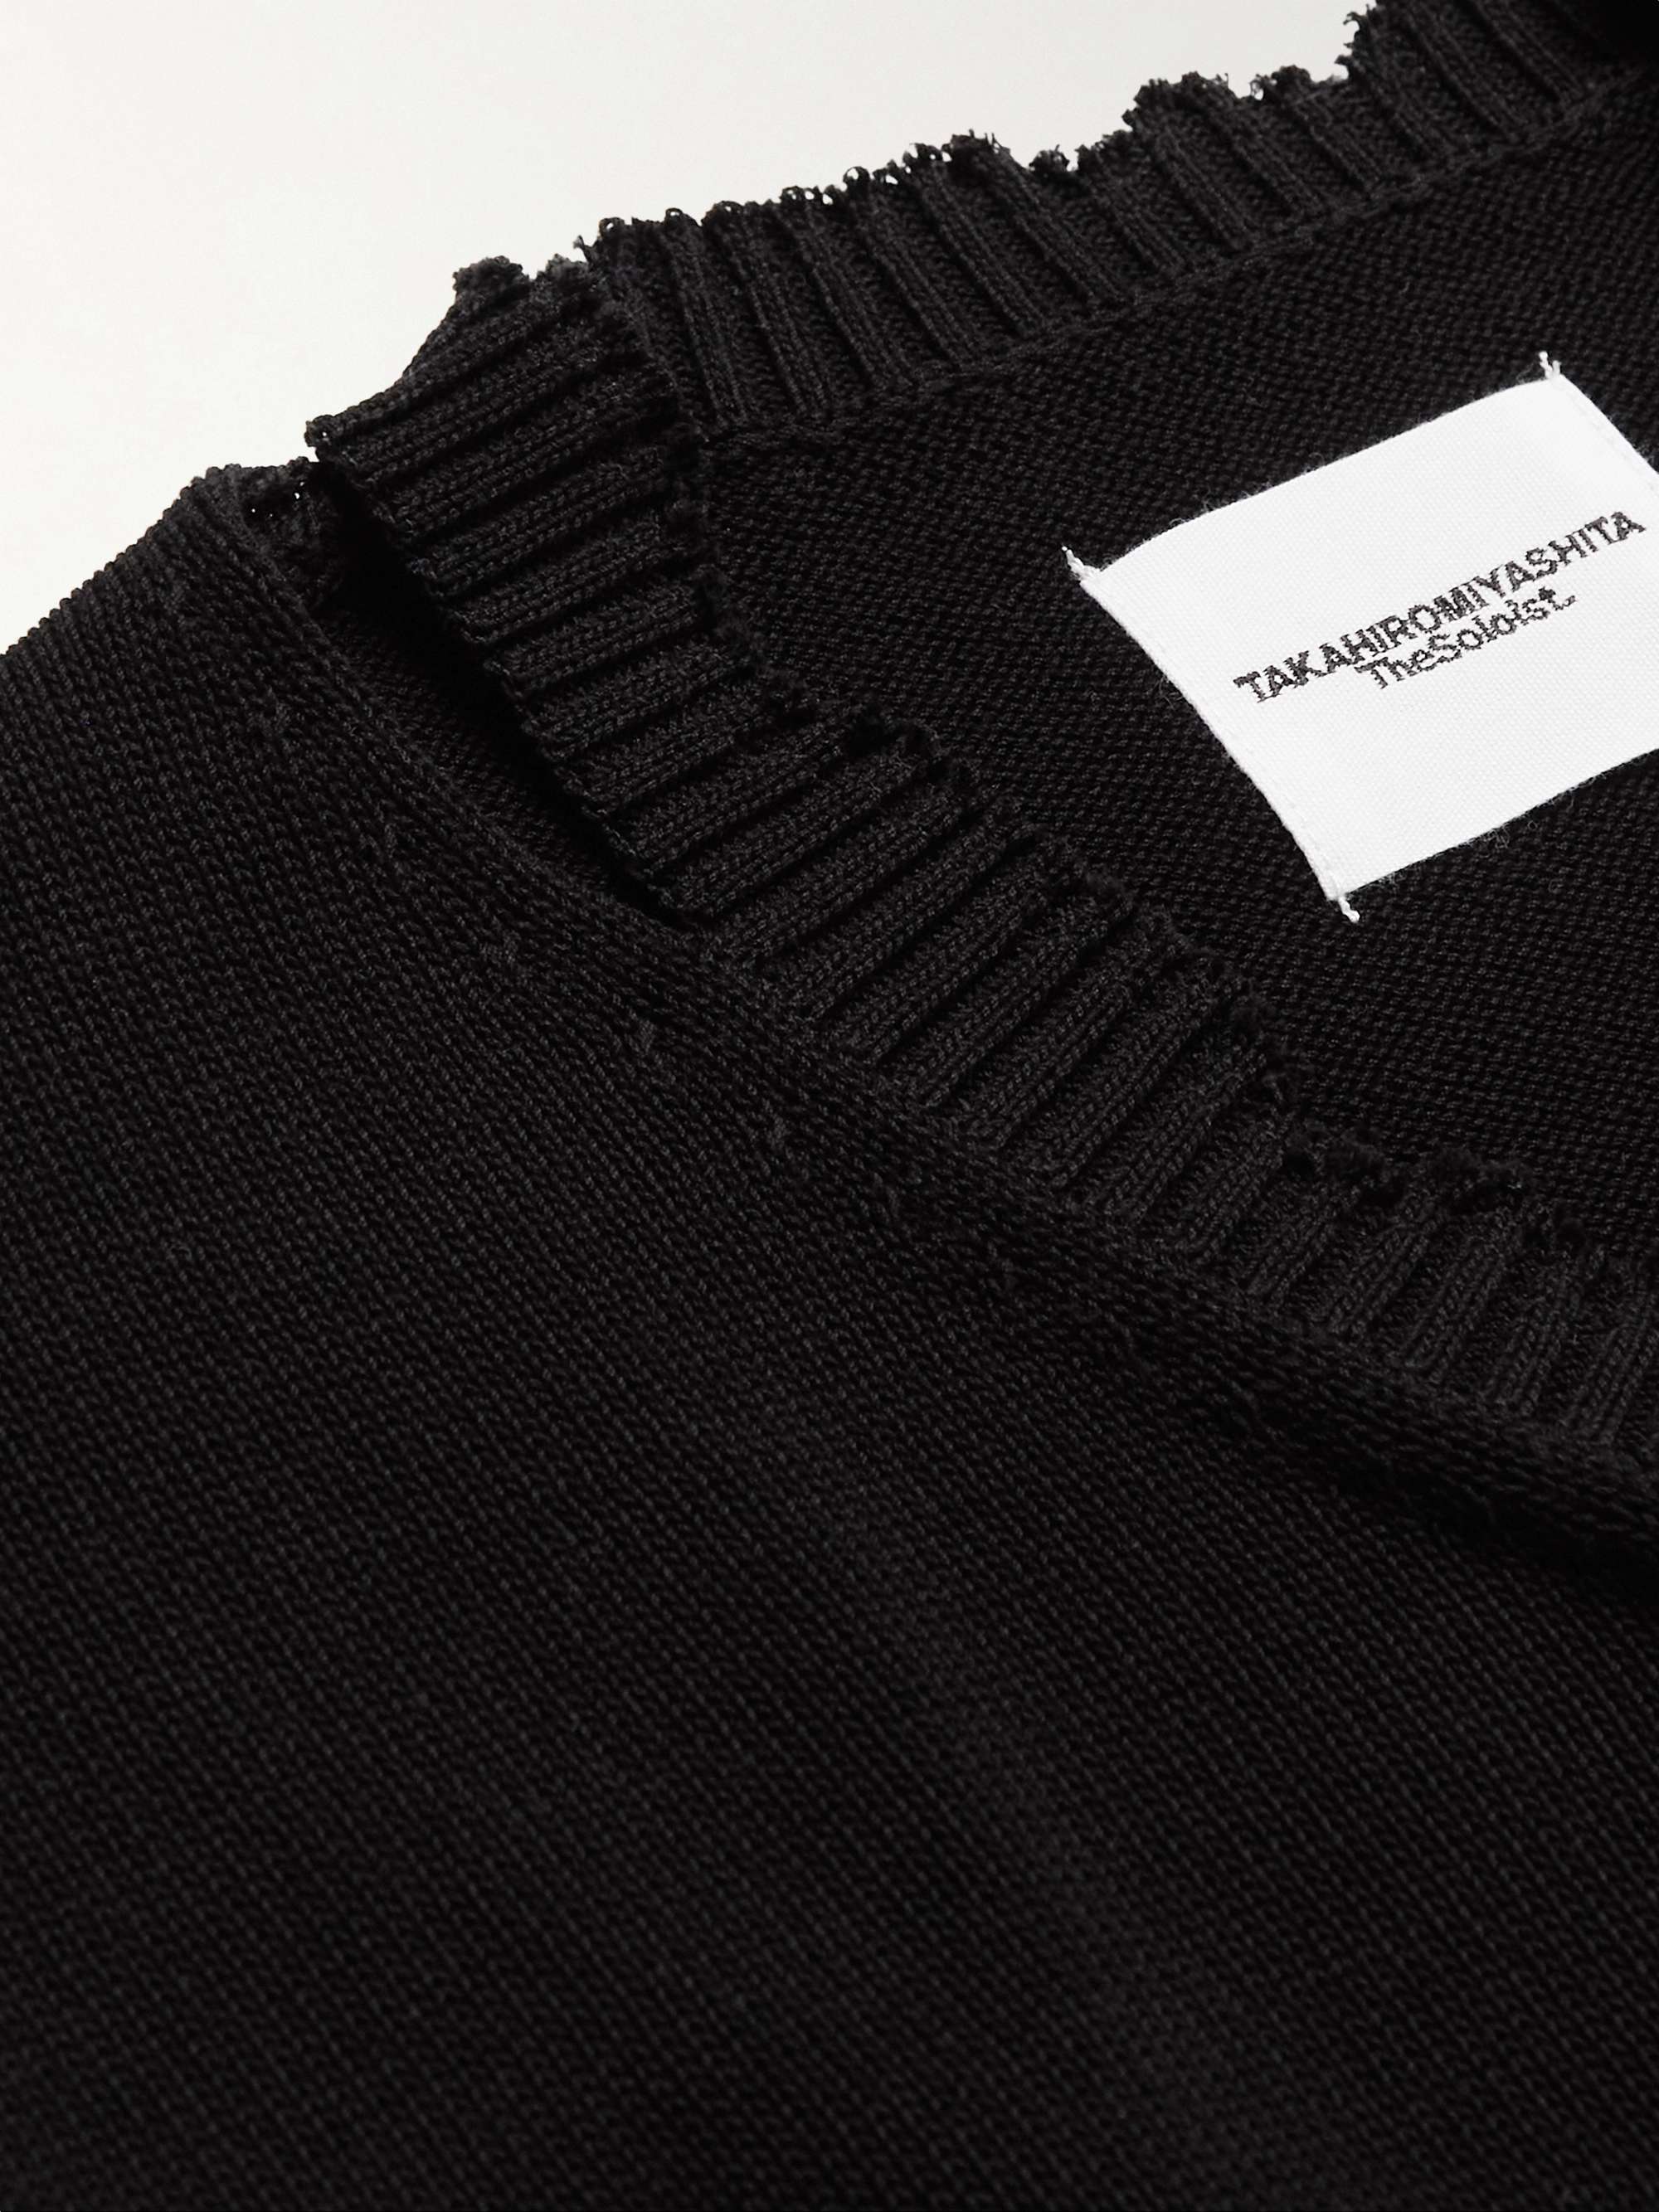 TAKAHIROMIYASHITA THESOLOIST. Cropped Distressed Appliquéd Cotton Sweater Vest